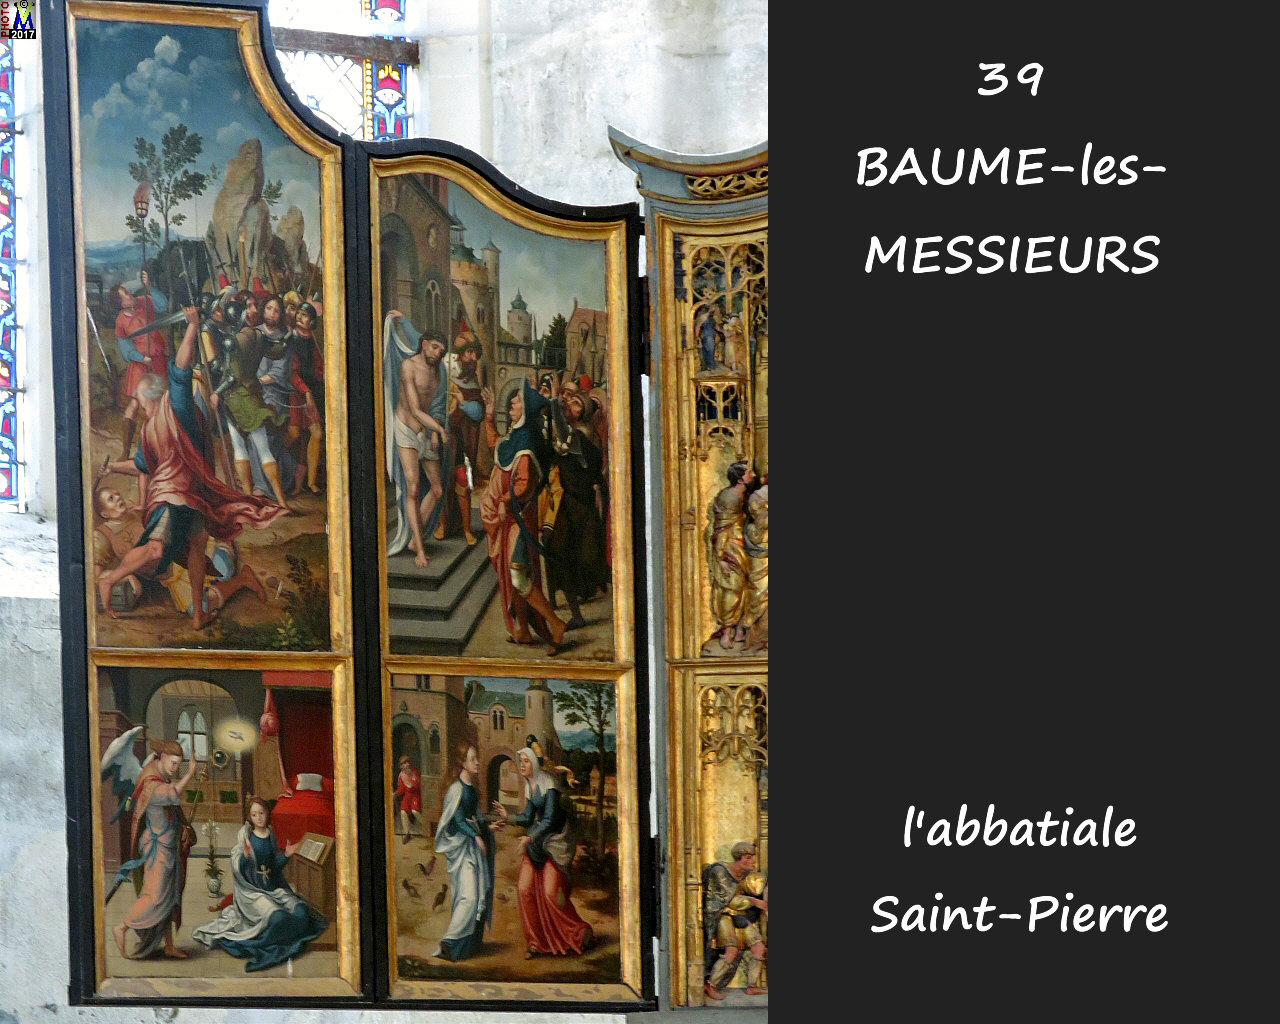 39BAUME-LES-MESSIEURS_abbatiale_232.jpg